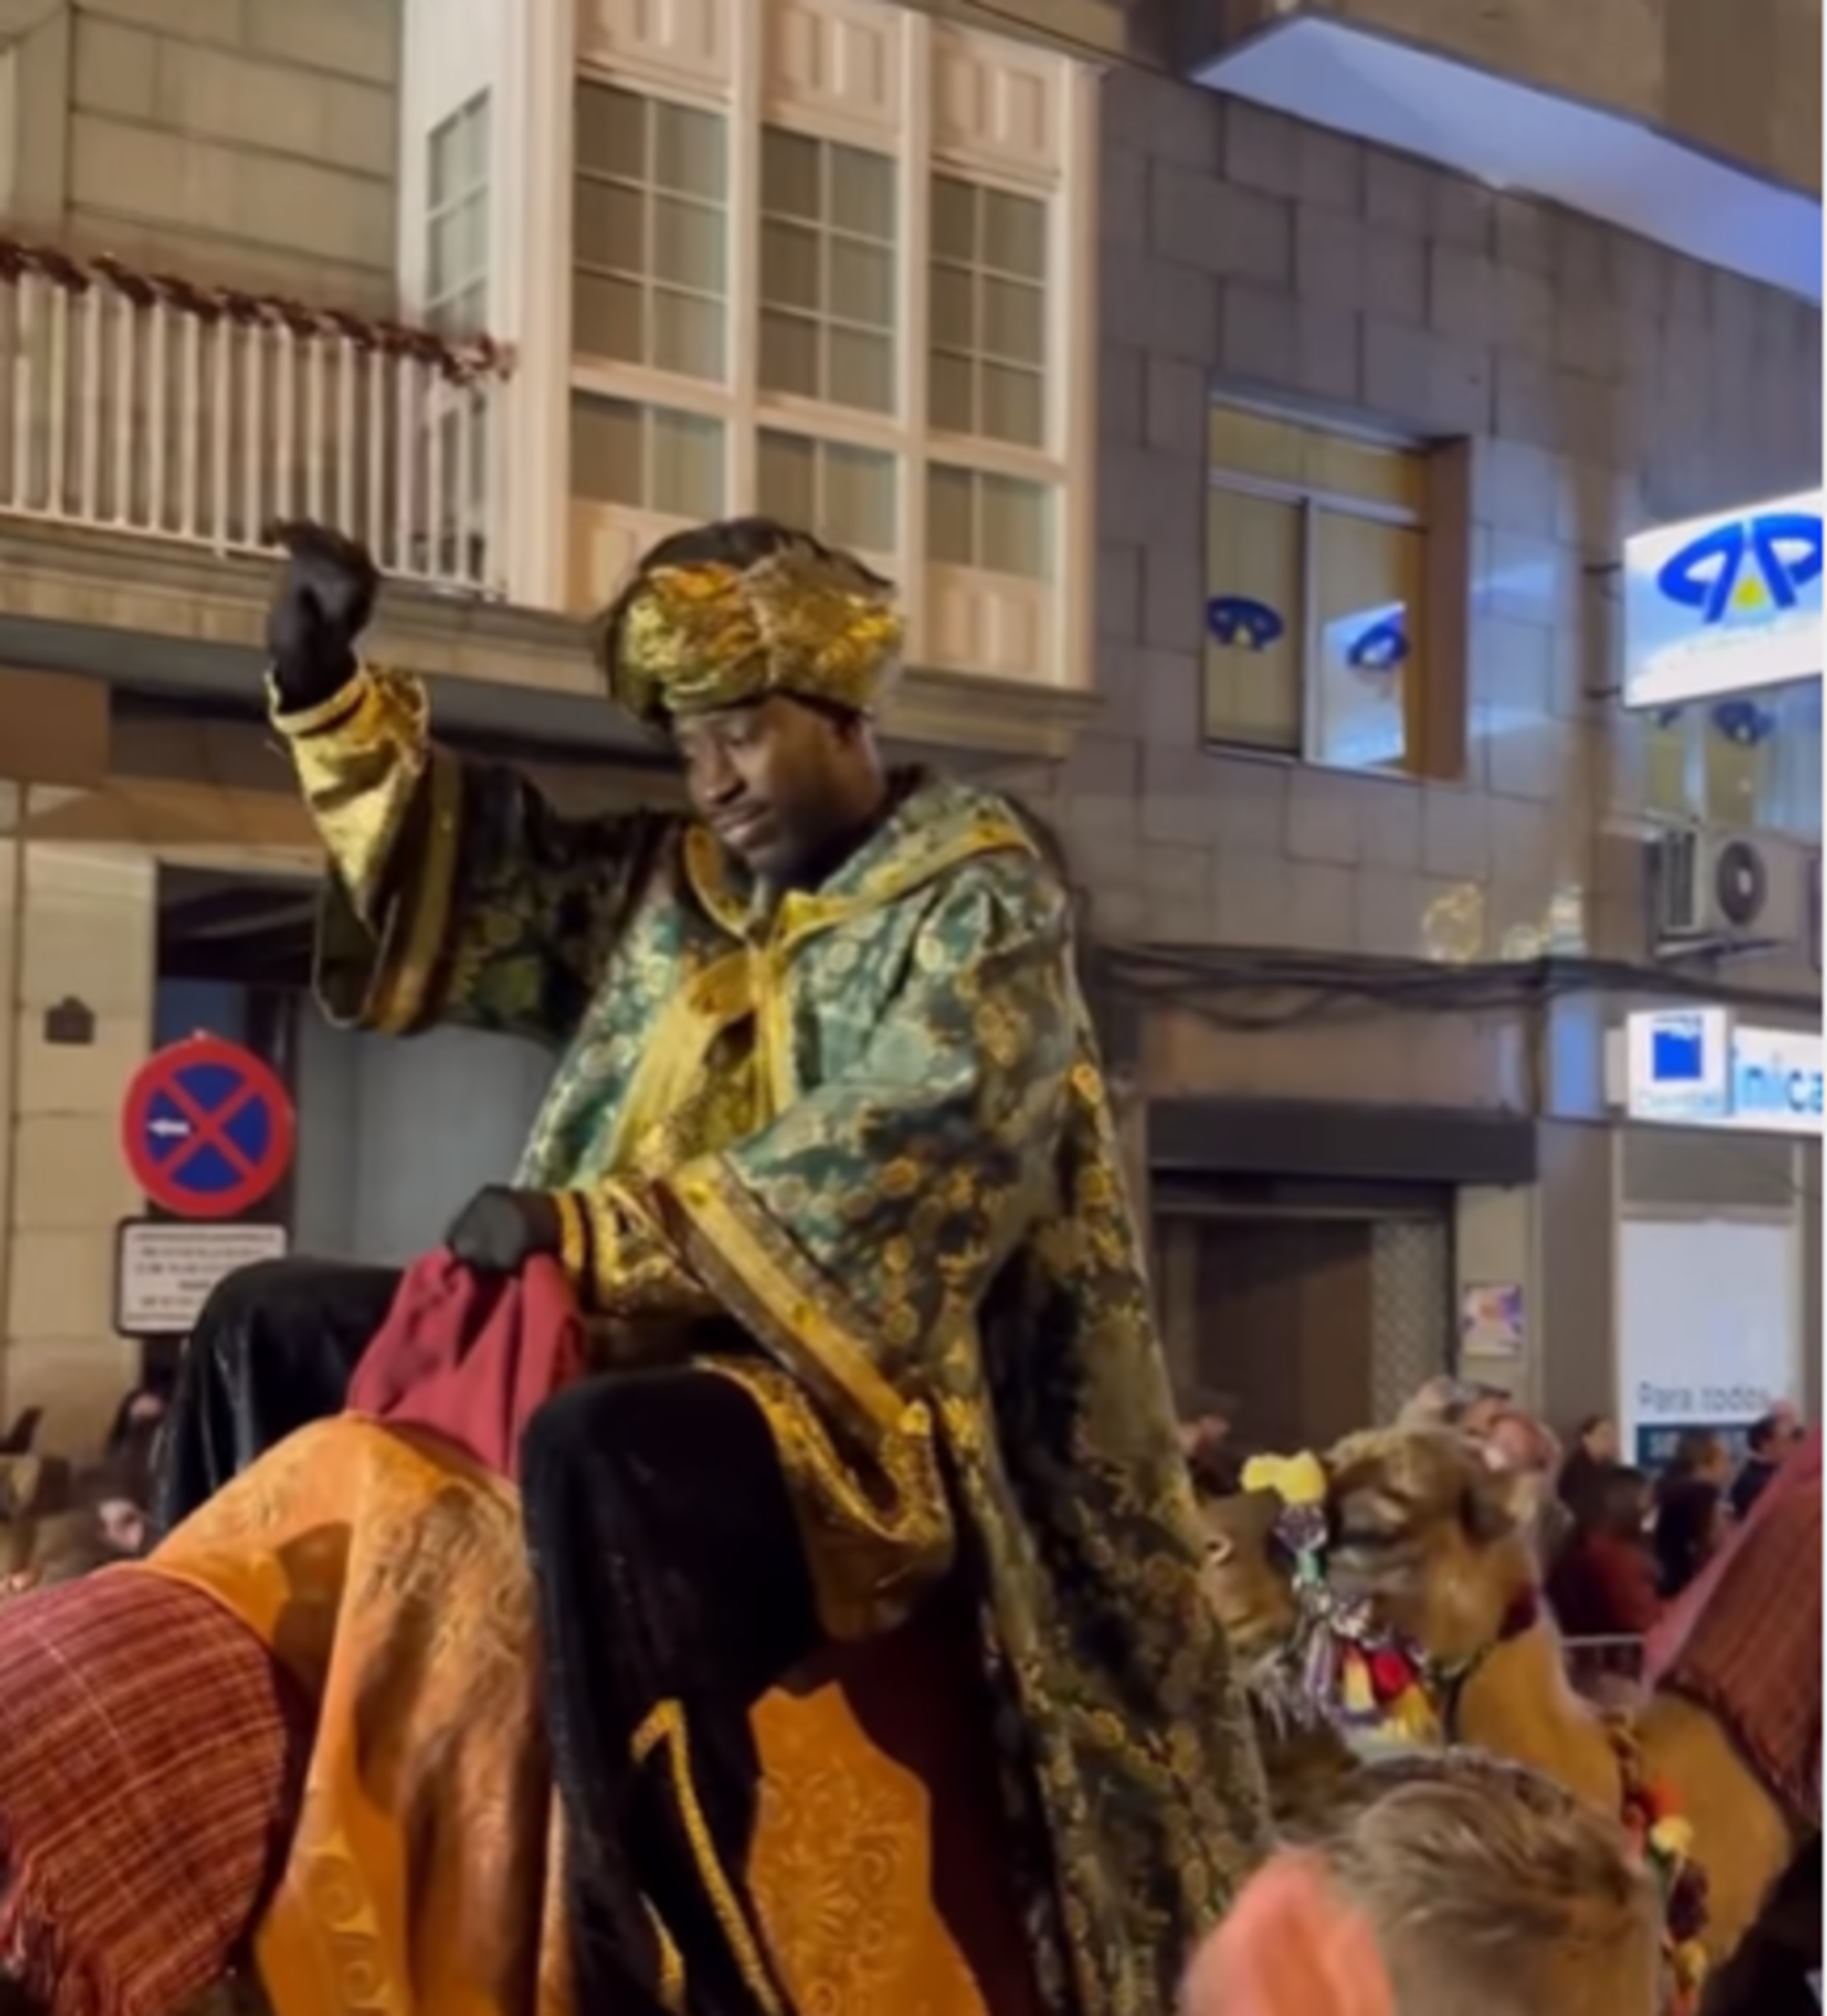 Escàndol a Ourense: el rei Baltasar de la cavalcada estava condemnat per abusos sexuals